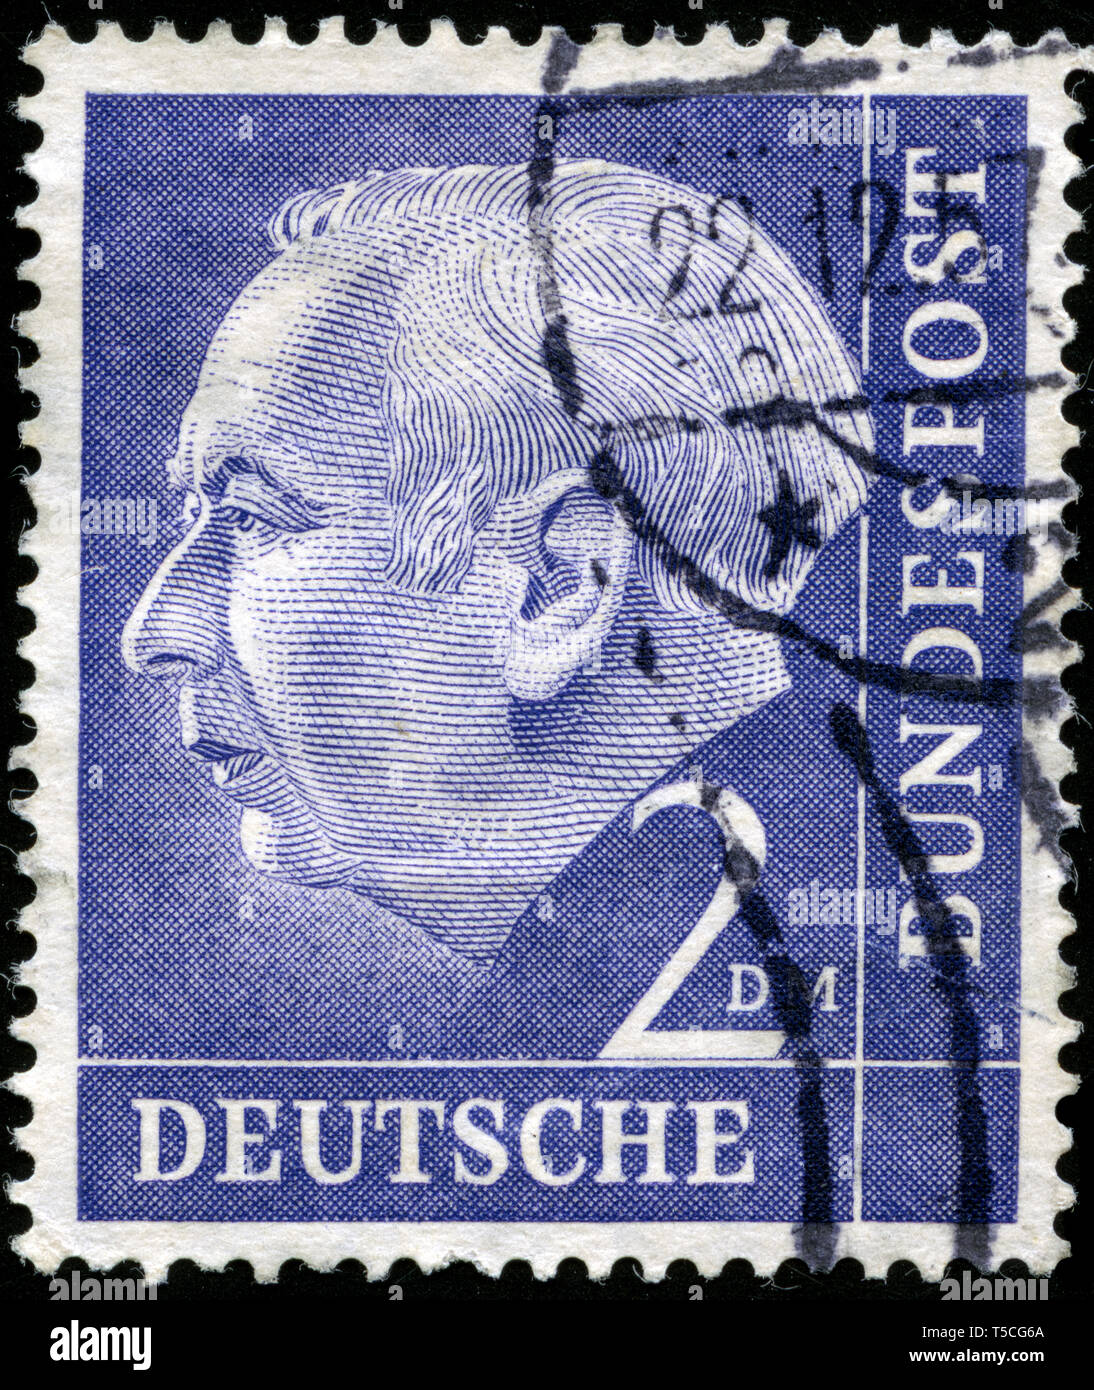 Briefmarke aus der Bundesrepublik Deutschland in der Bundespräsident Theodor Heuss Serie 1954 ausgestellt Stockfoto